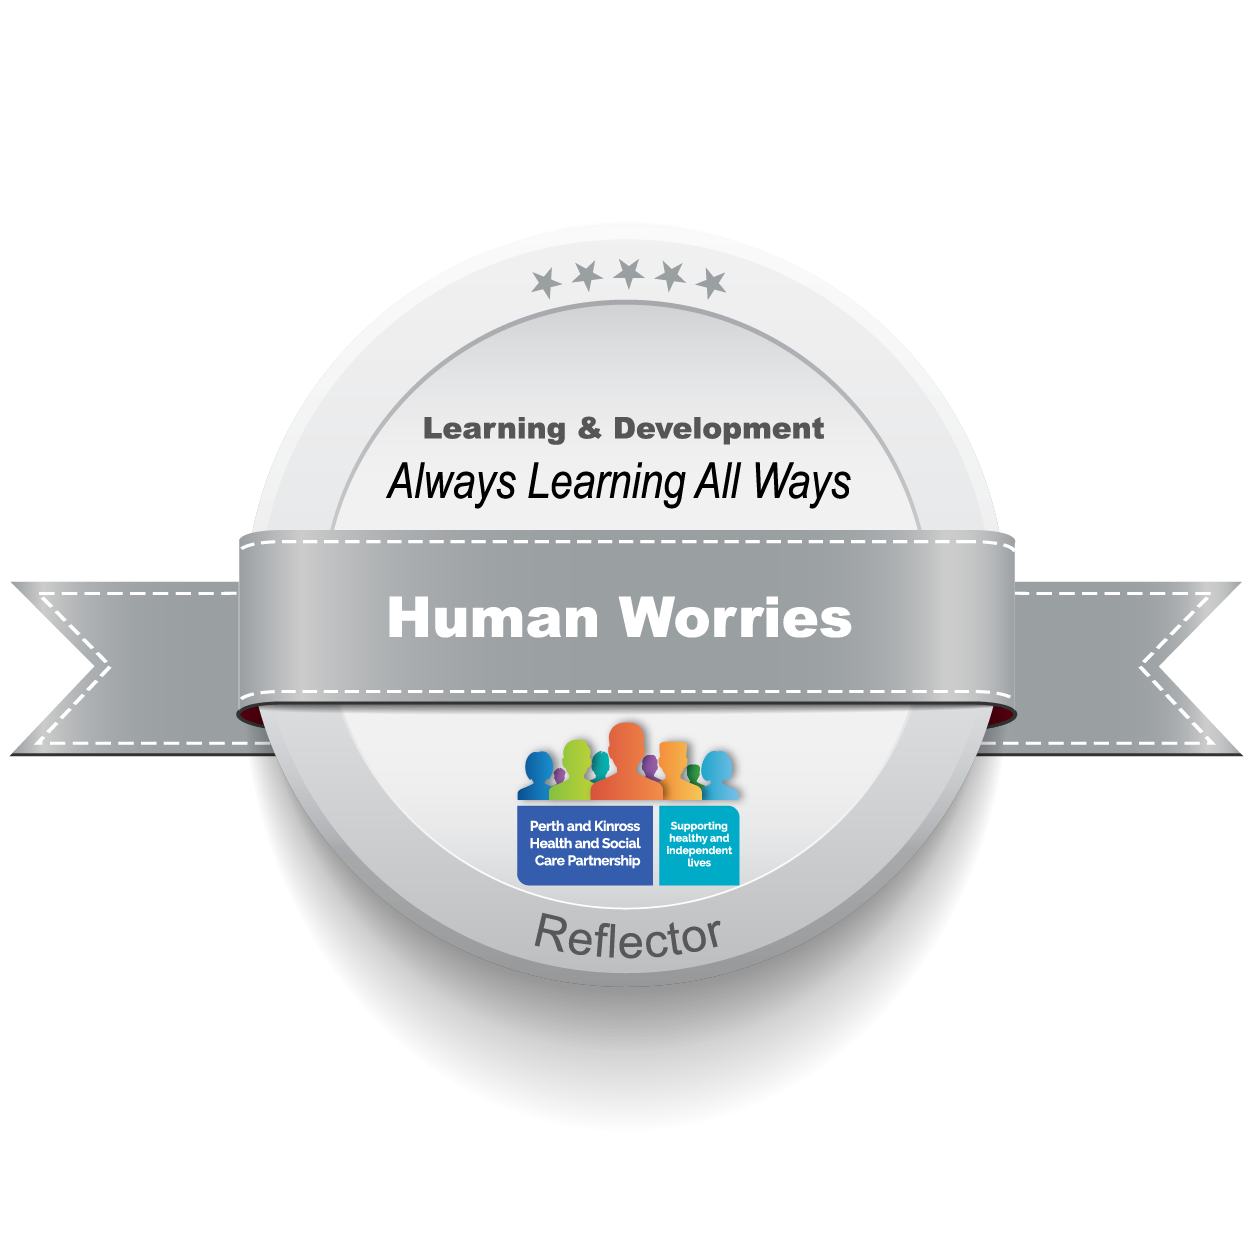 Human Worries - Next Step - Reflector